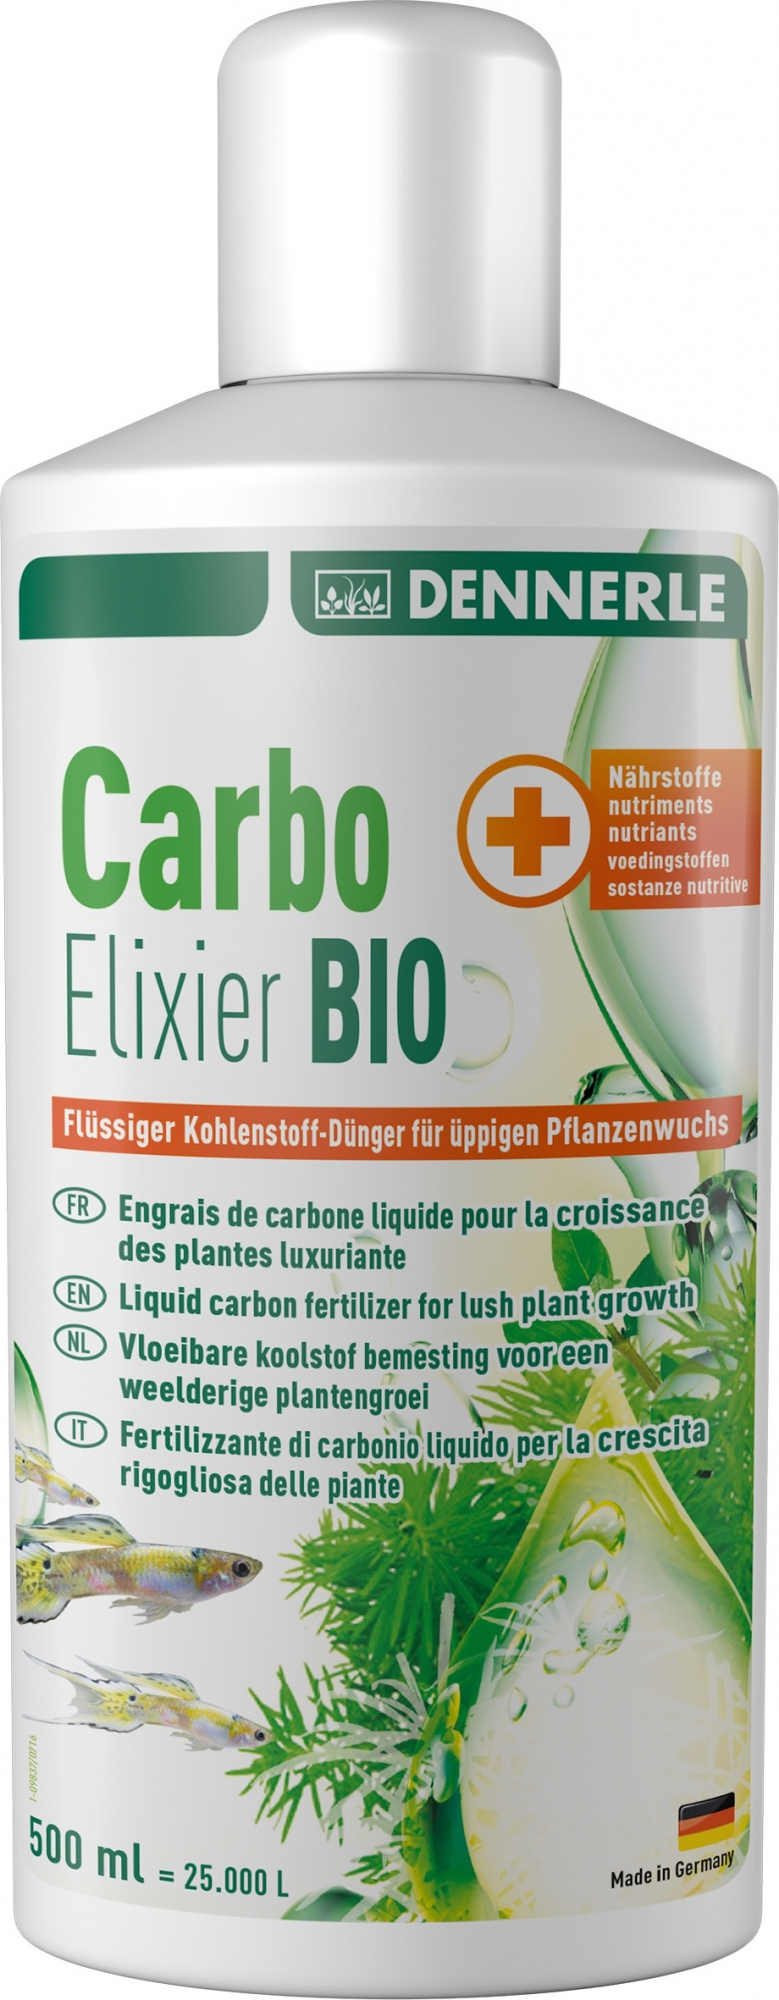 Dennerle Carbo Elixier Bio Flüssiges Kohlendioxid